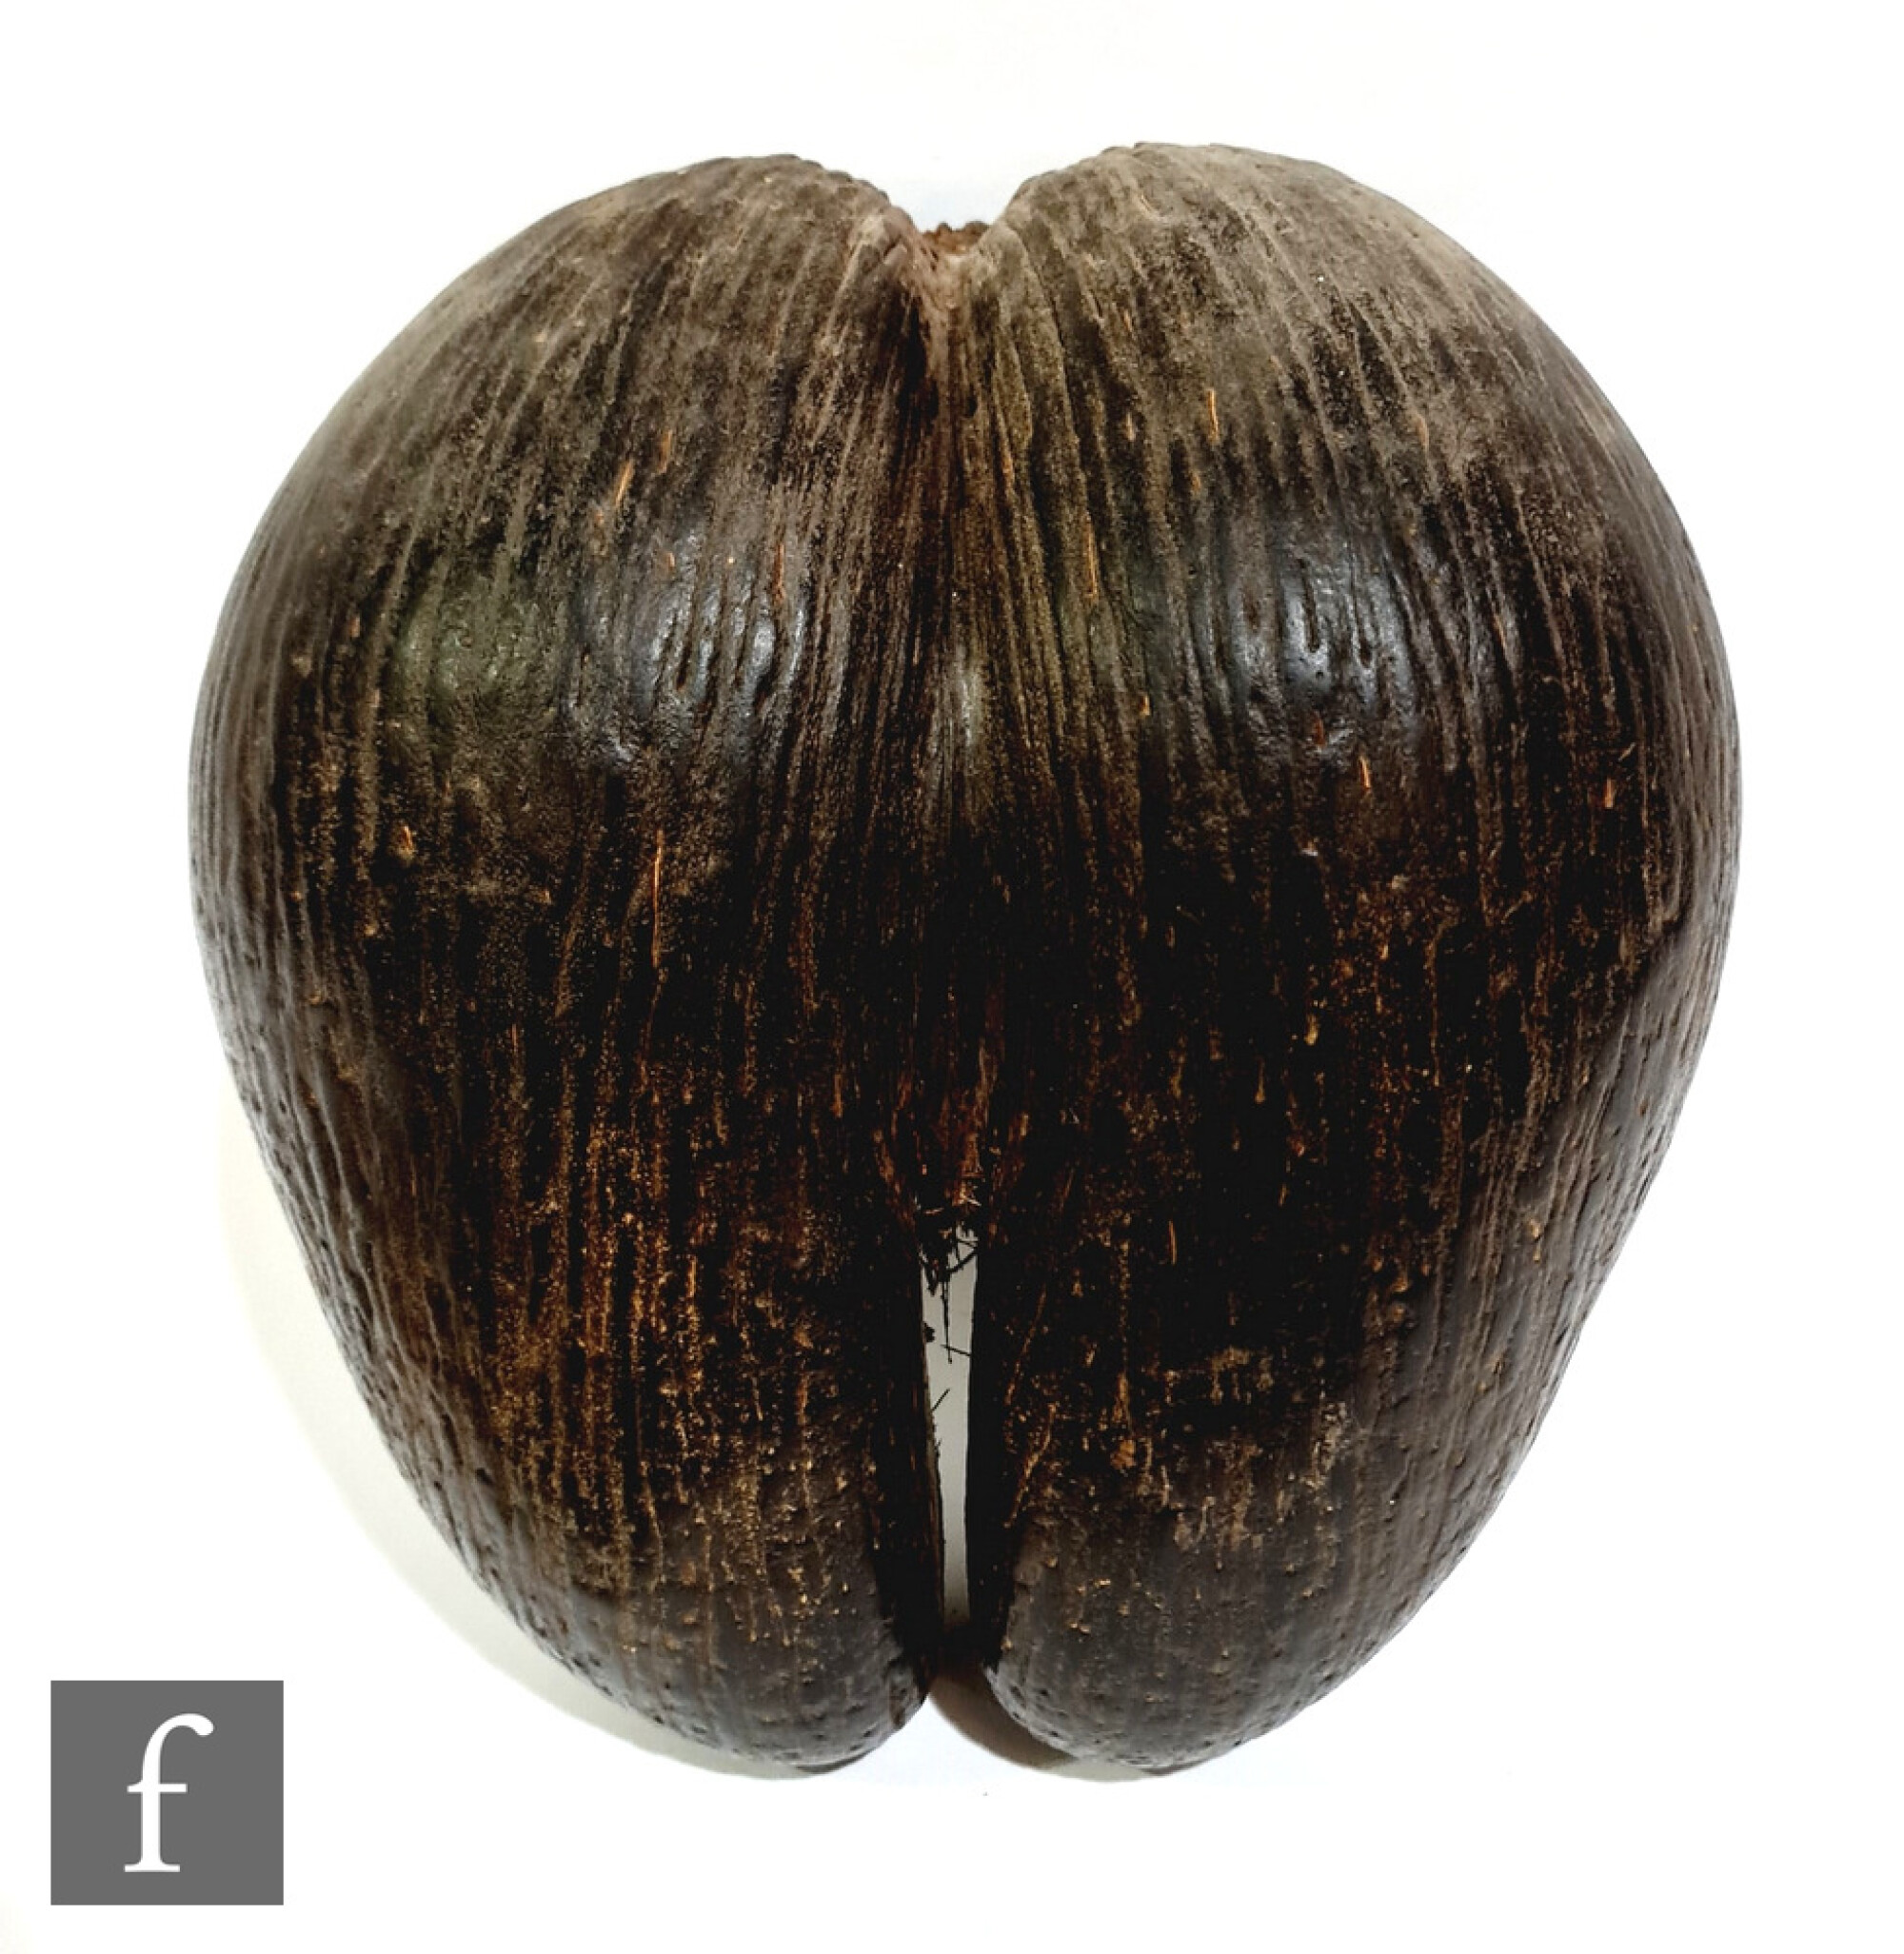 A coco de mer or sea coconu... | Fieldings Auctioneers